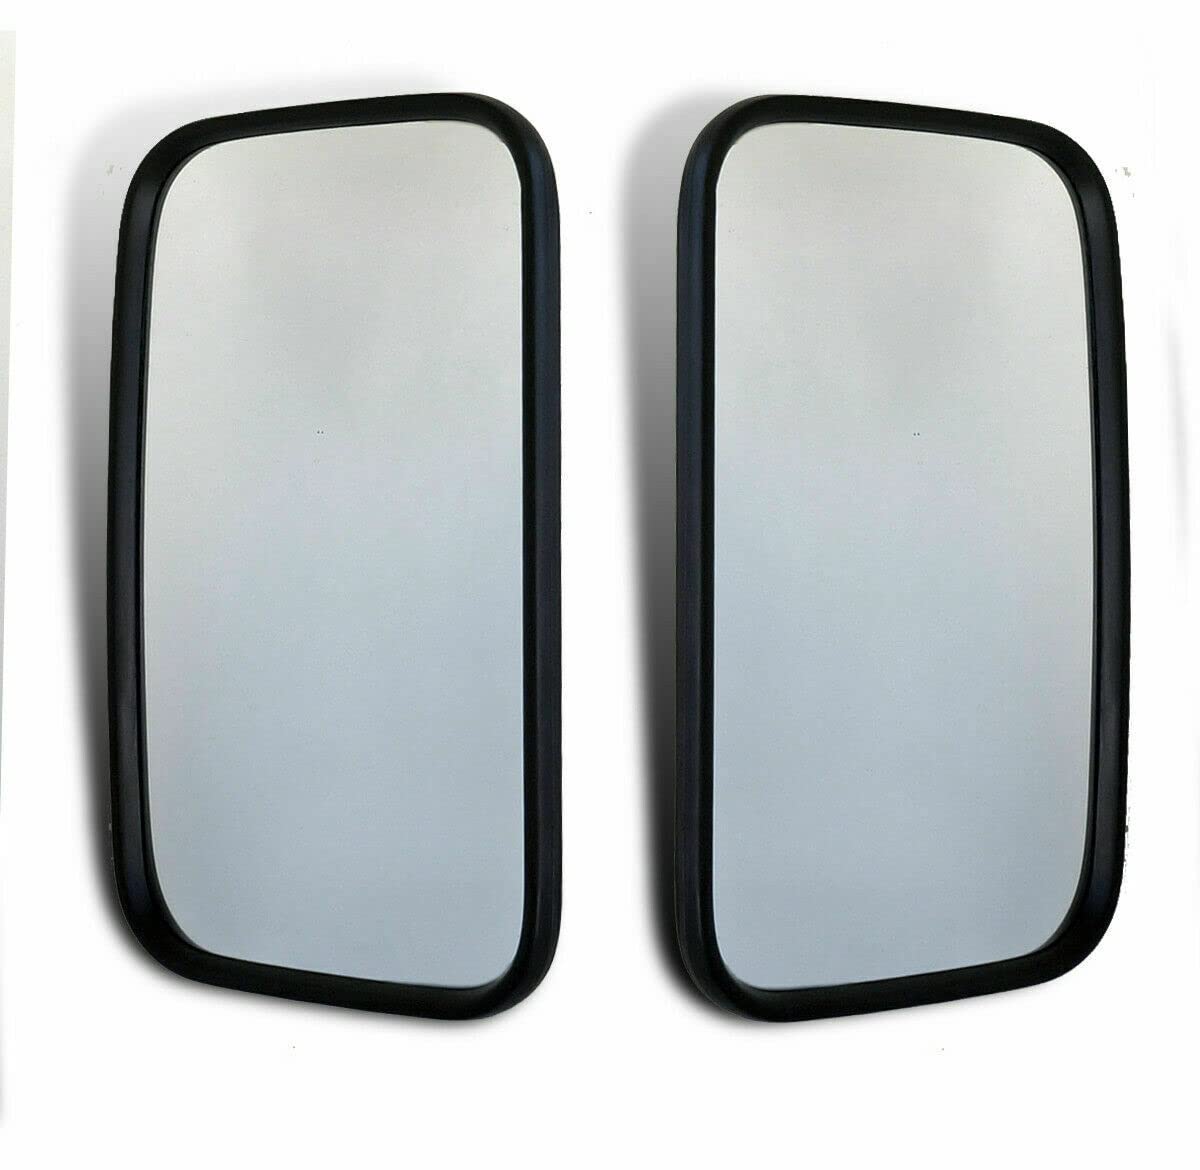 2x Spiegel Schwarz Ersatzspiegel Rückspiegel Außenspiegel Zusatzspiegel Links Rechts LKW Bus Traktor 320mmx187mm von Autobits